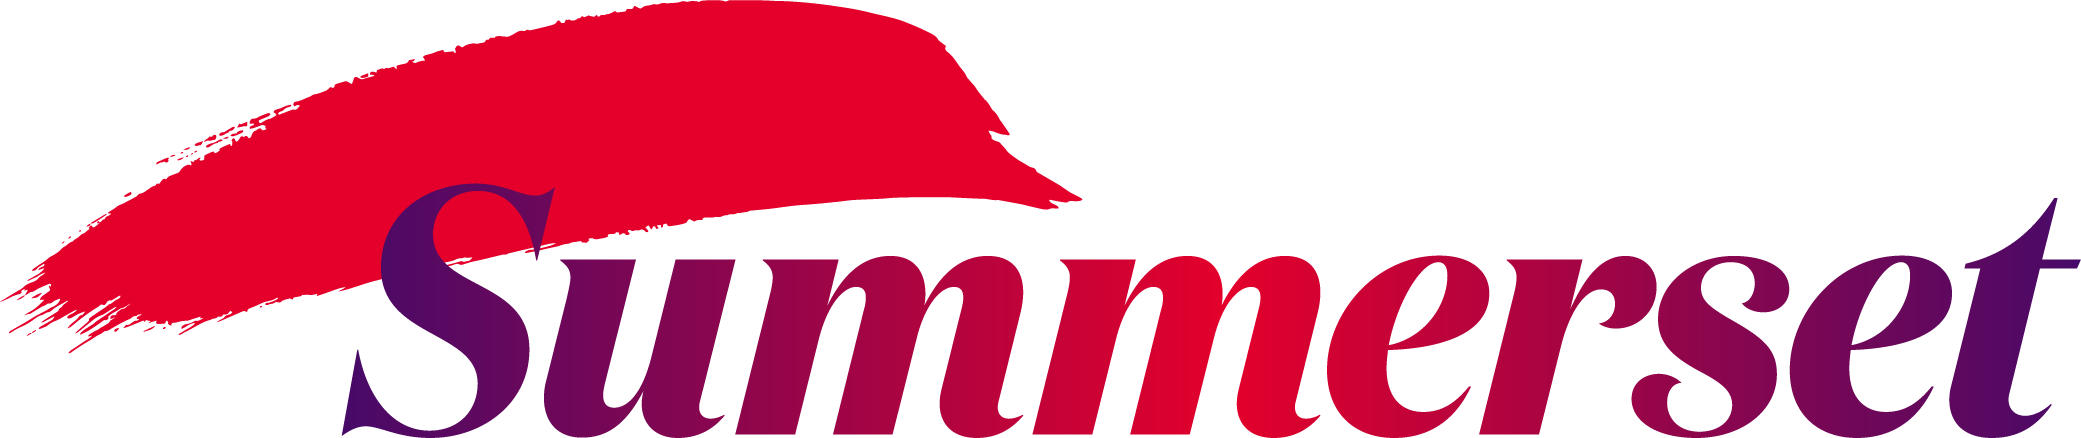 Summerset at Bishopscourt, Dunedin logo